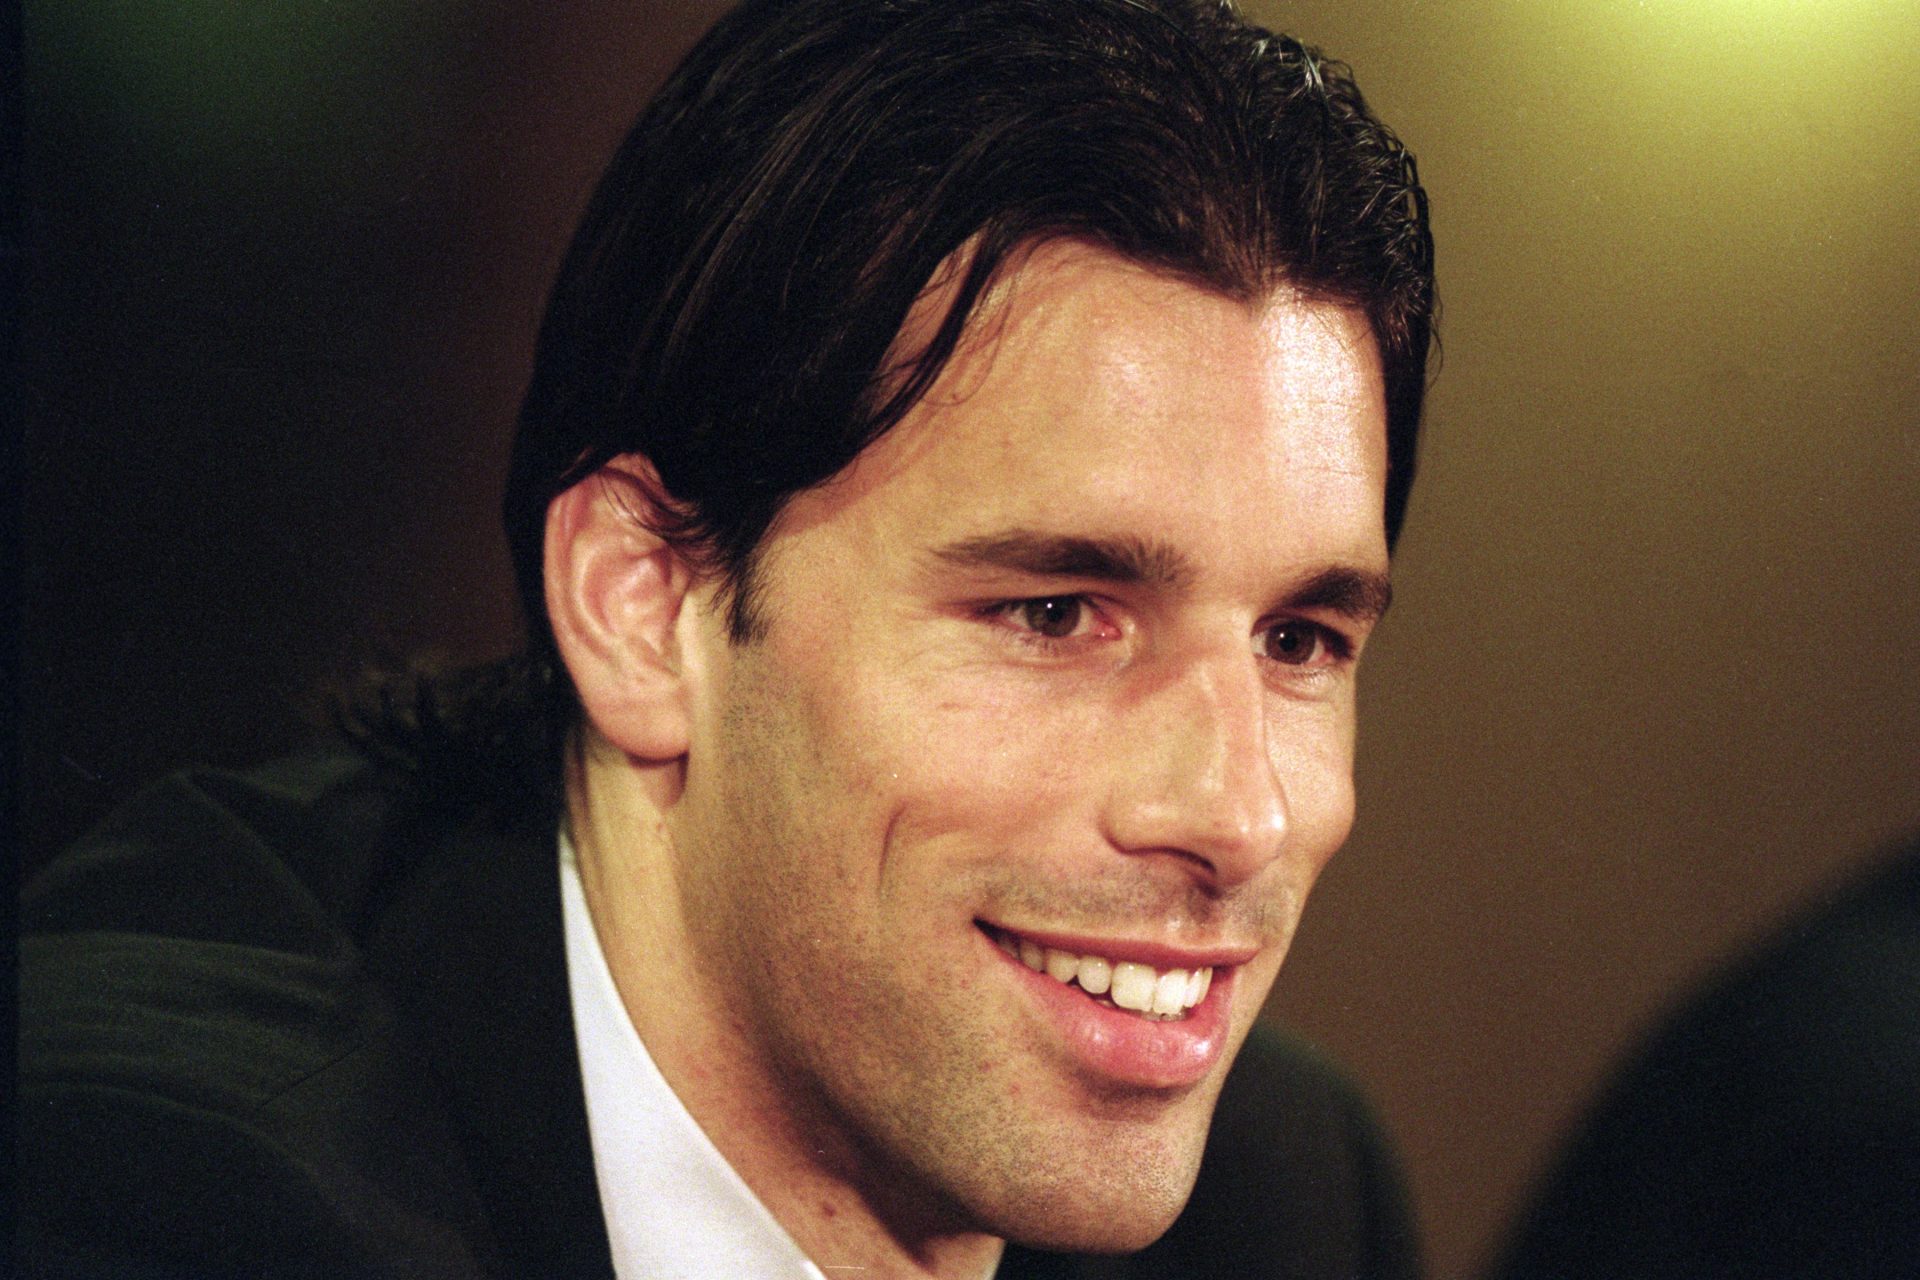 <p>Nel 1999 Van Nistelrooy viene scelto come calciatore olandese dell'anno dopo la sua straordinaria stagione da esordiente con il PSV Eindhoven.</p>